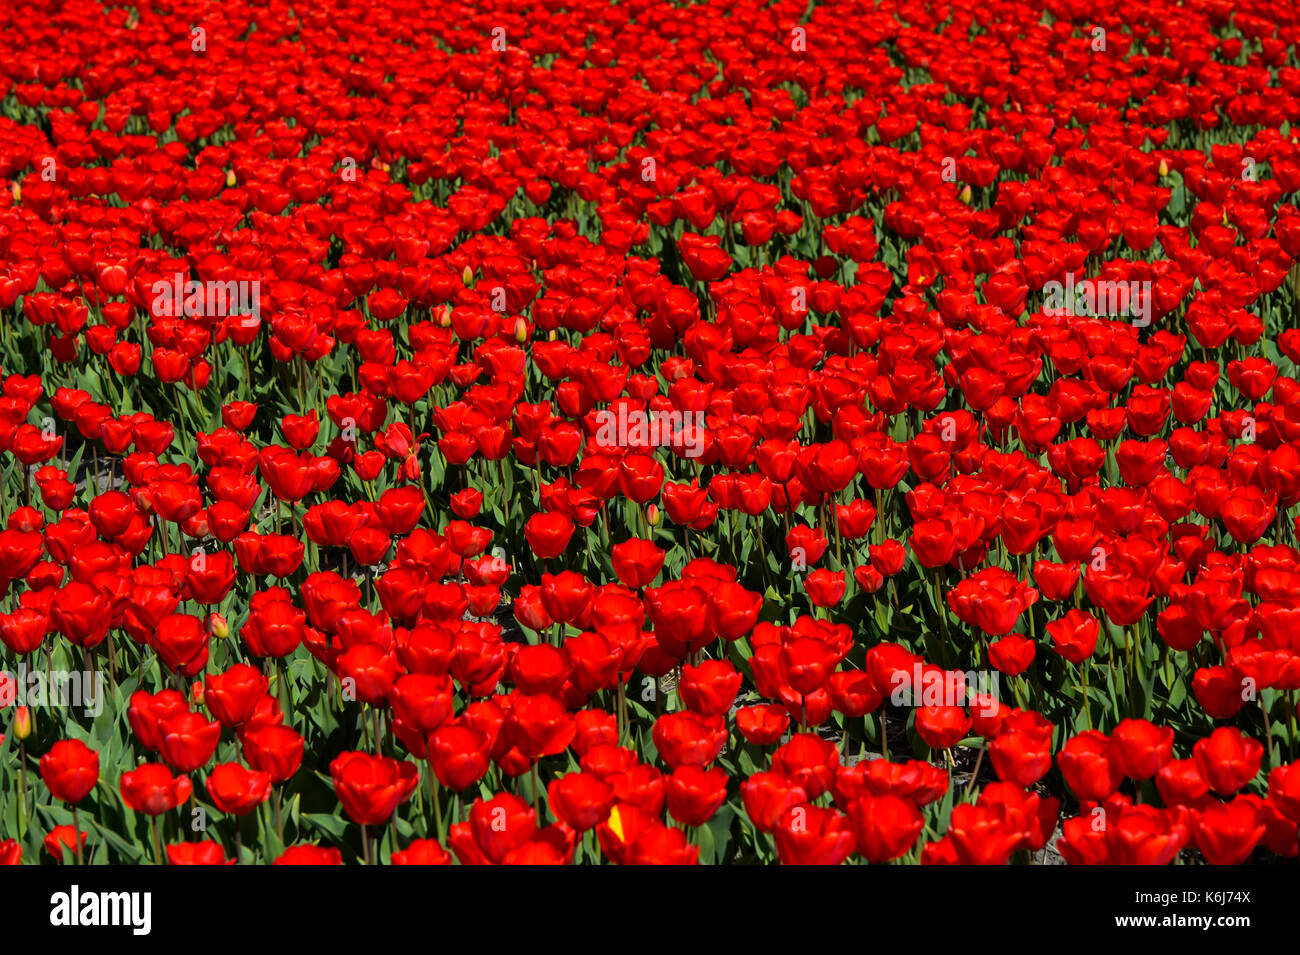 Blooming tulip field in the area of Bollenstreek, Noordwijkerhout, Netherlands Stock Photo